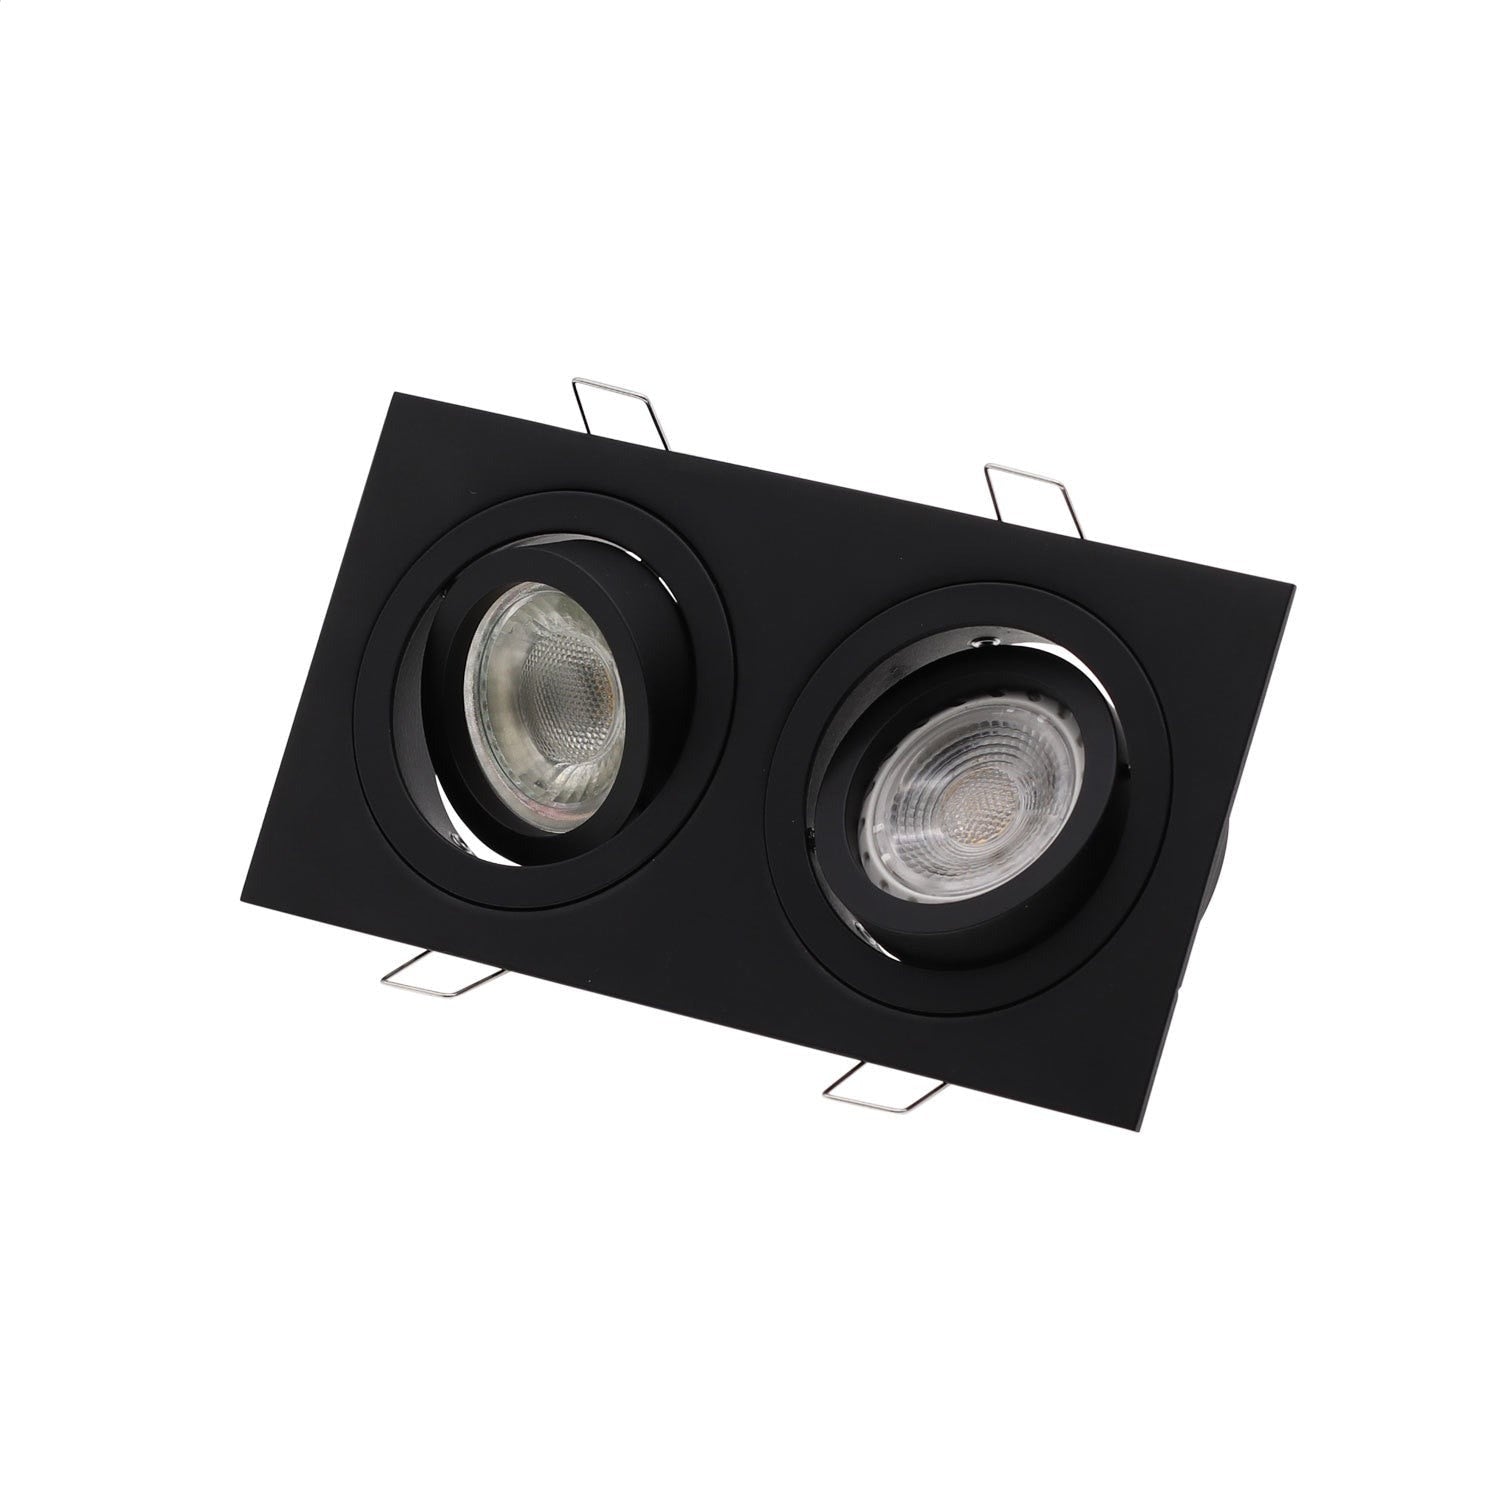 High Quality Aluminum GU10 MR16 Downlight Holder Black Silver White GU10 Fixture Frame For LED Ceiling Light Trim